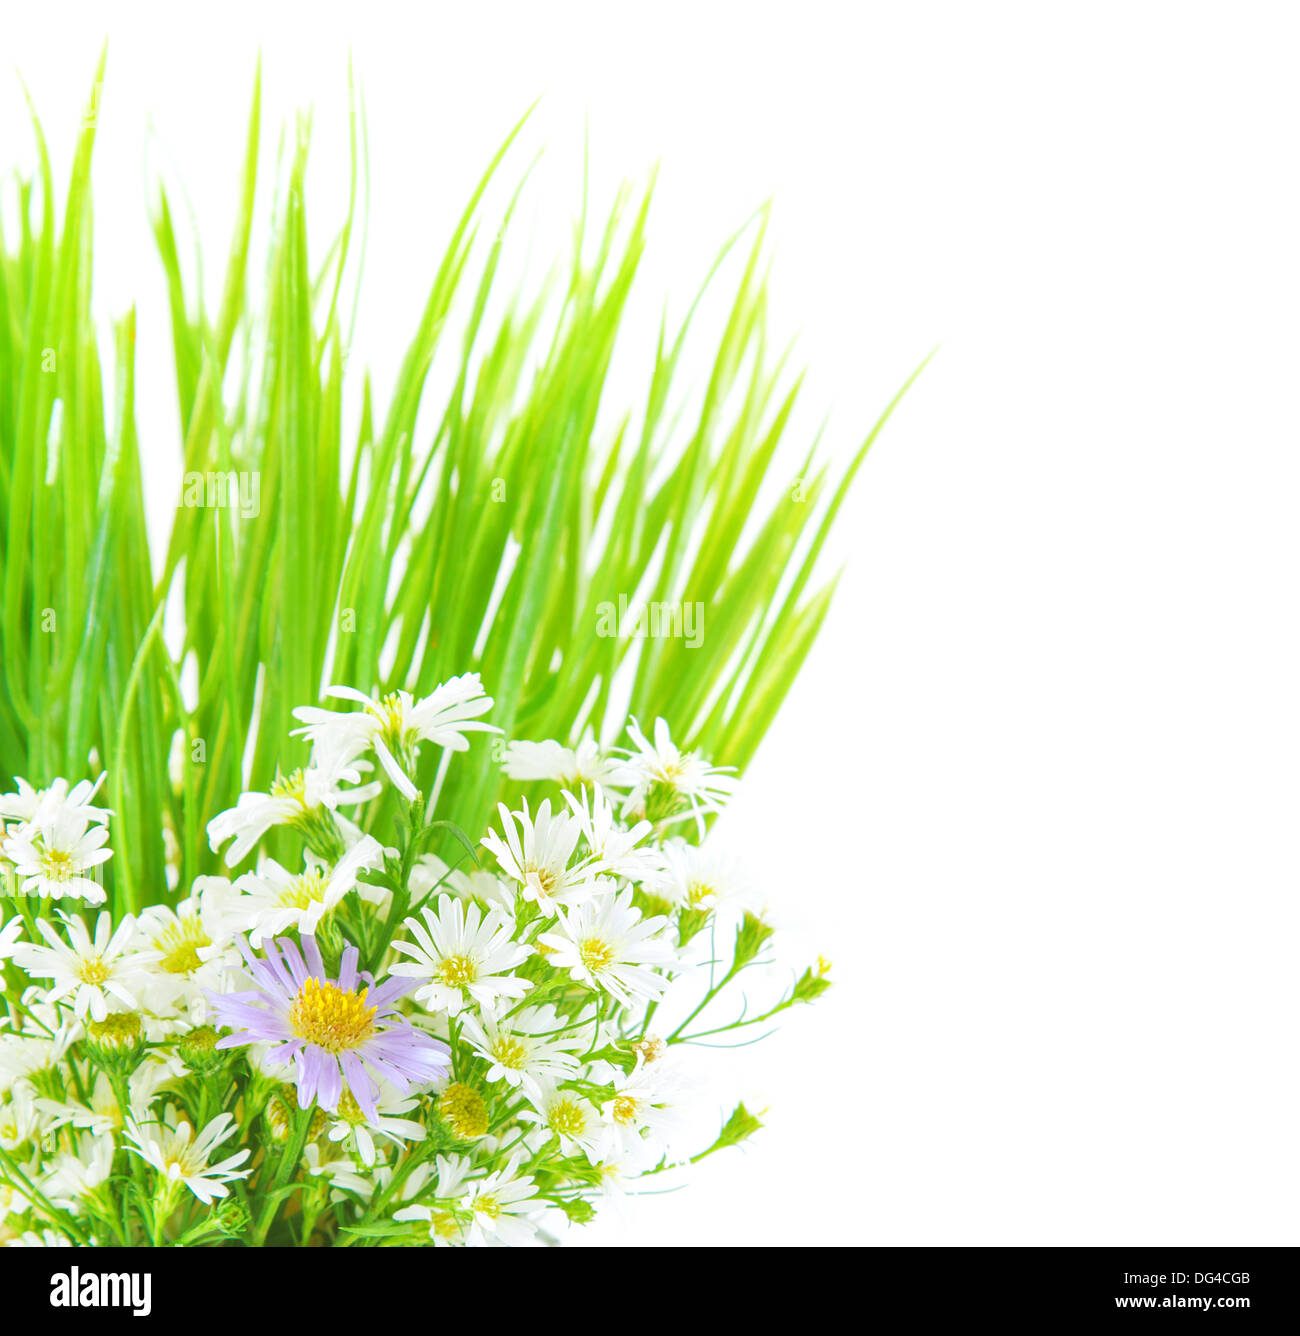 Frische Gänseblümchen Blumen und grünen Rasen Grenze isoliert auf weißem Hintergrund, Frühling Zeit Saison, natürlichen Dekor Stockfoto